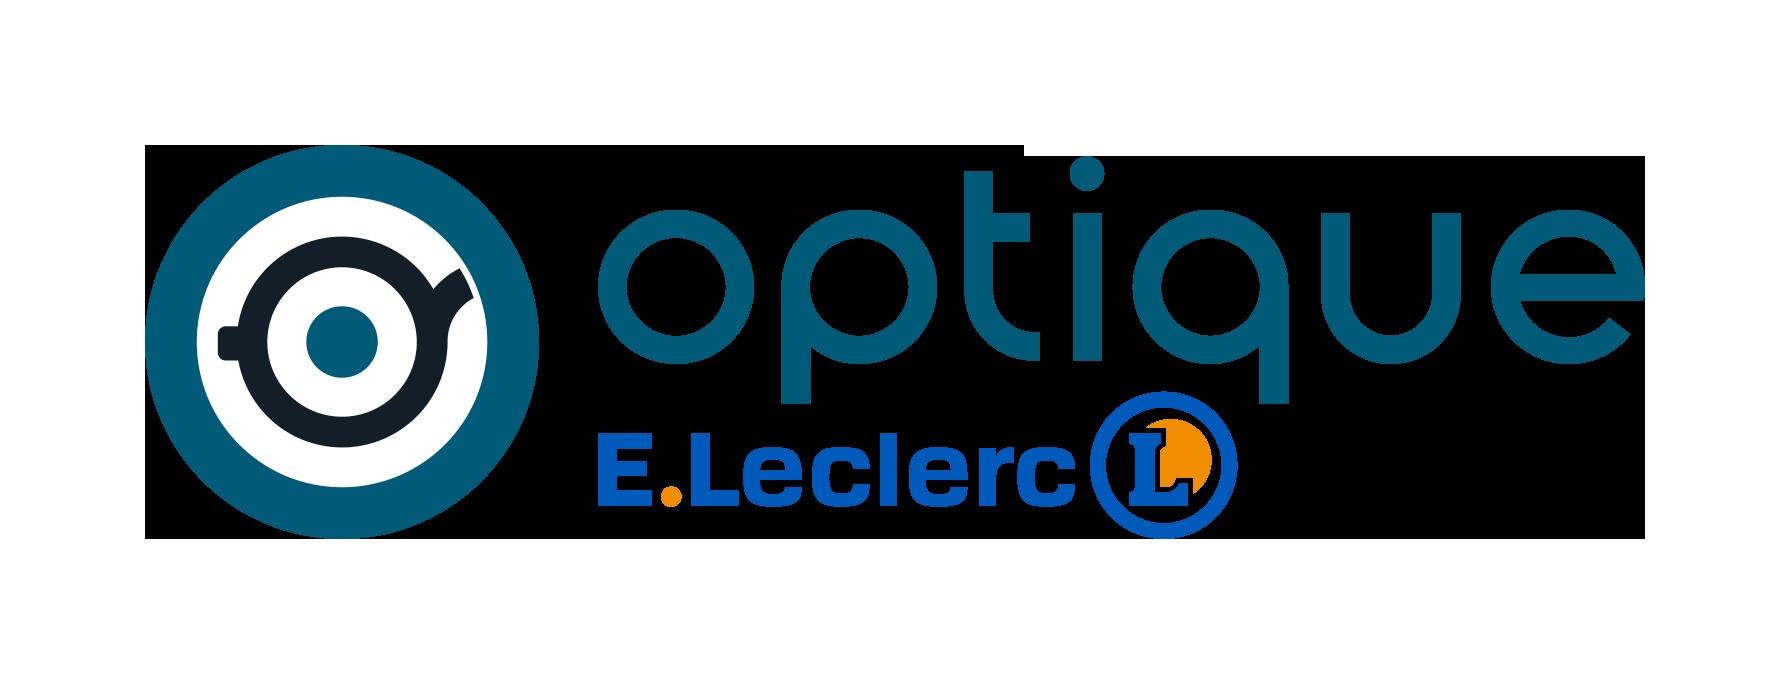 E.leclerc Optique Coutances